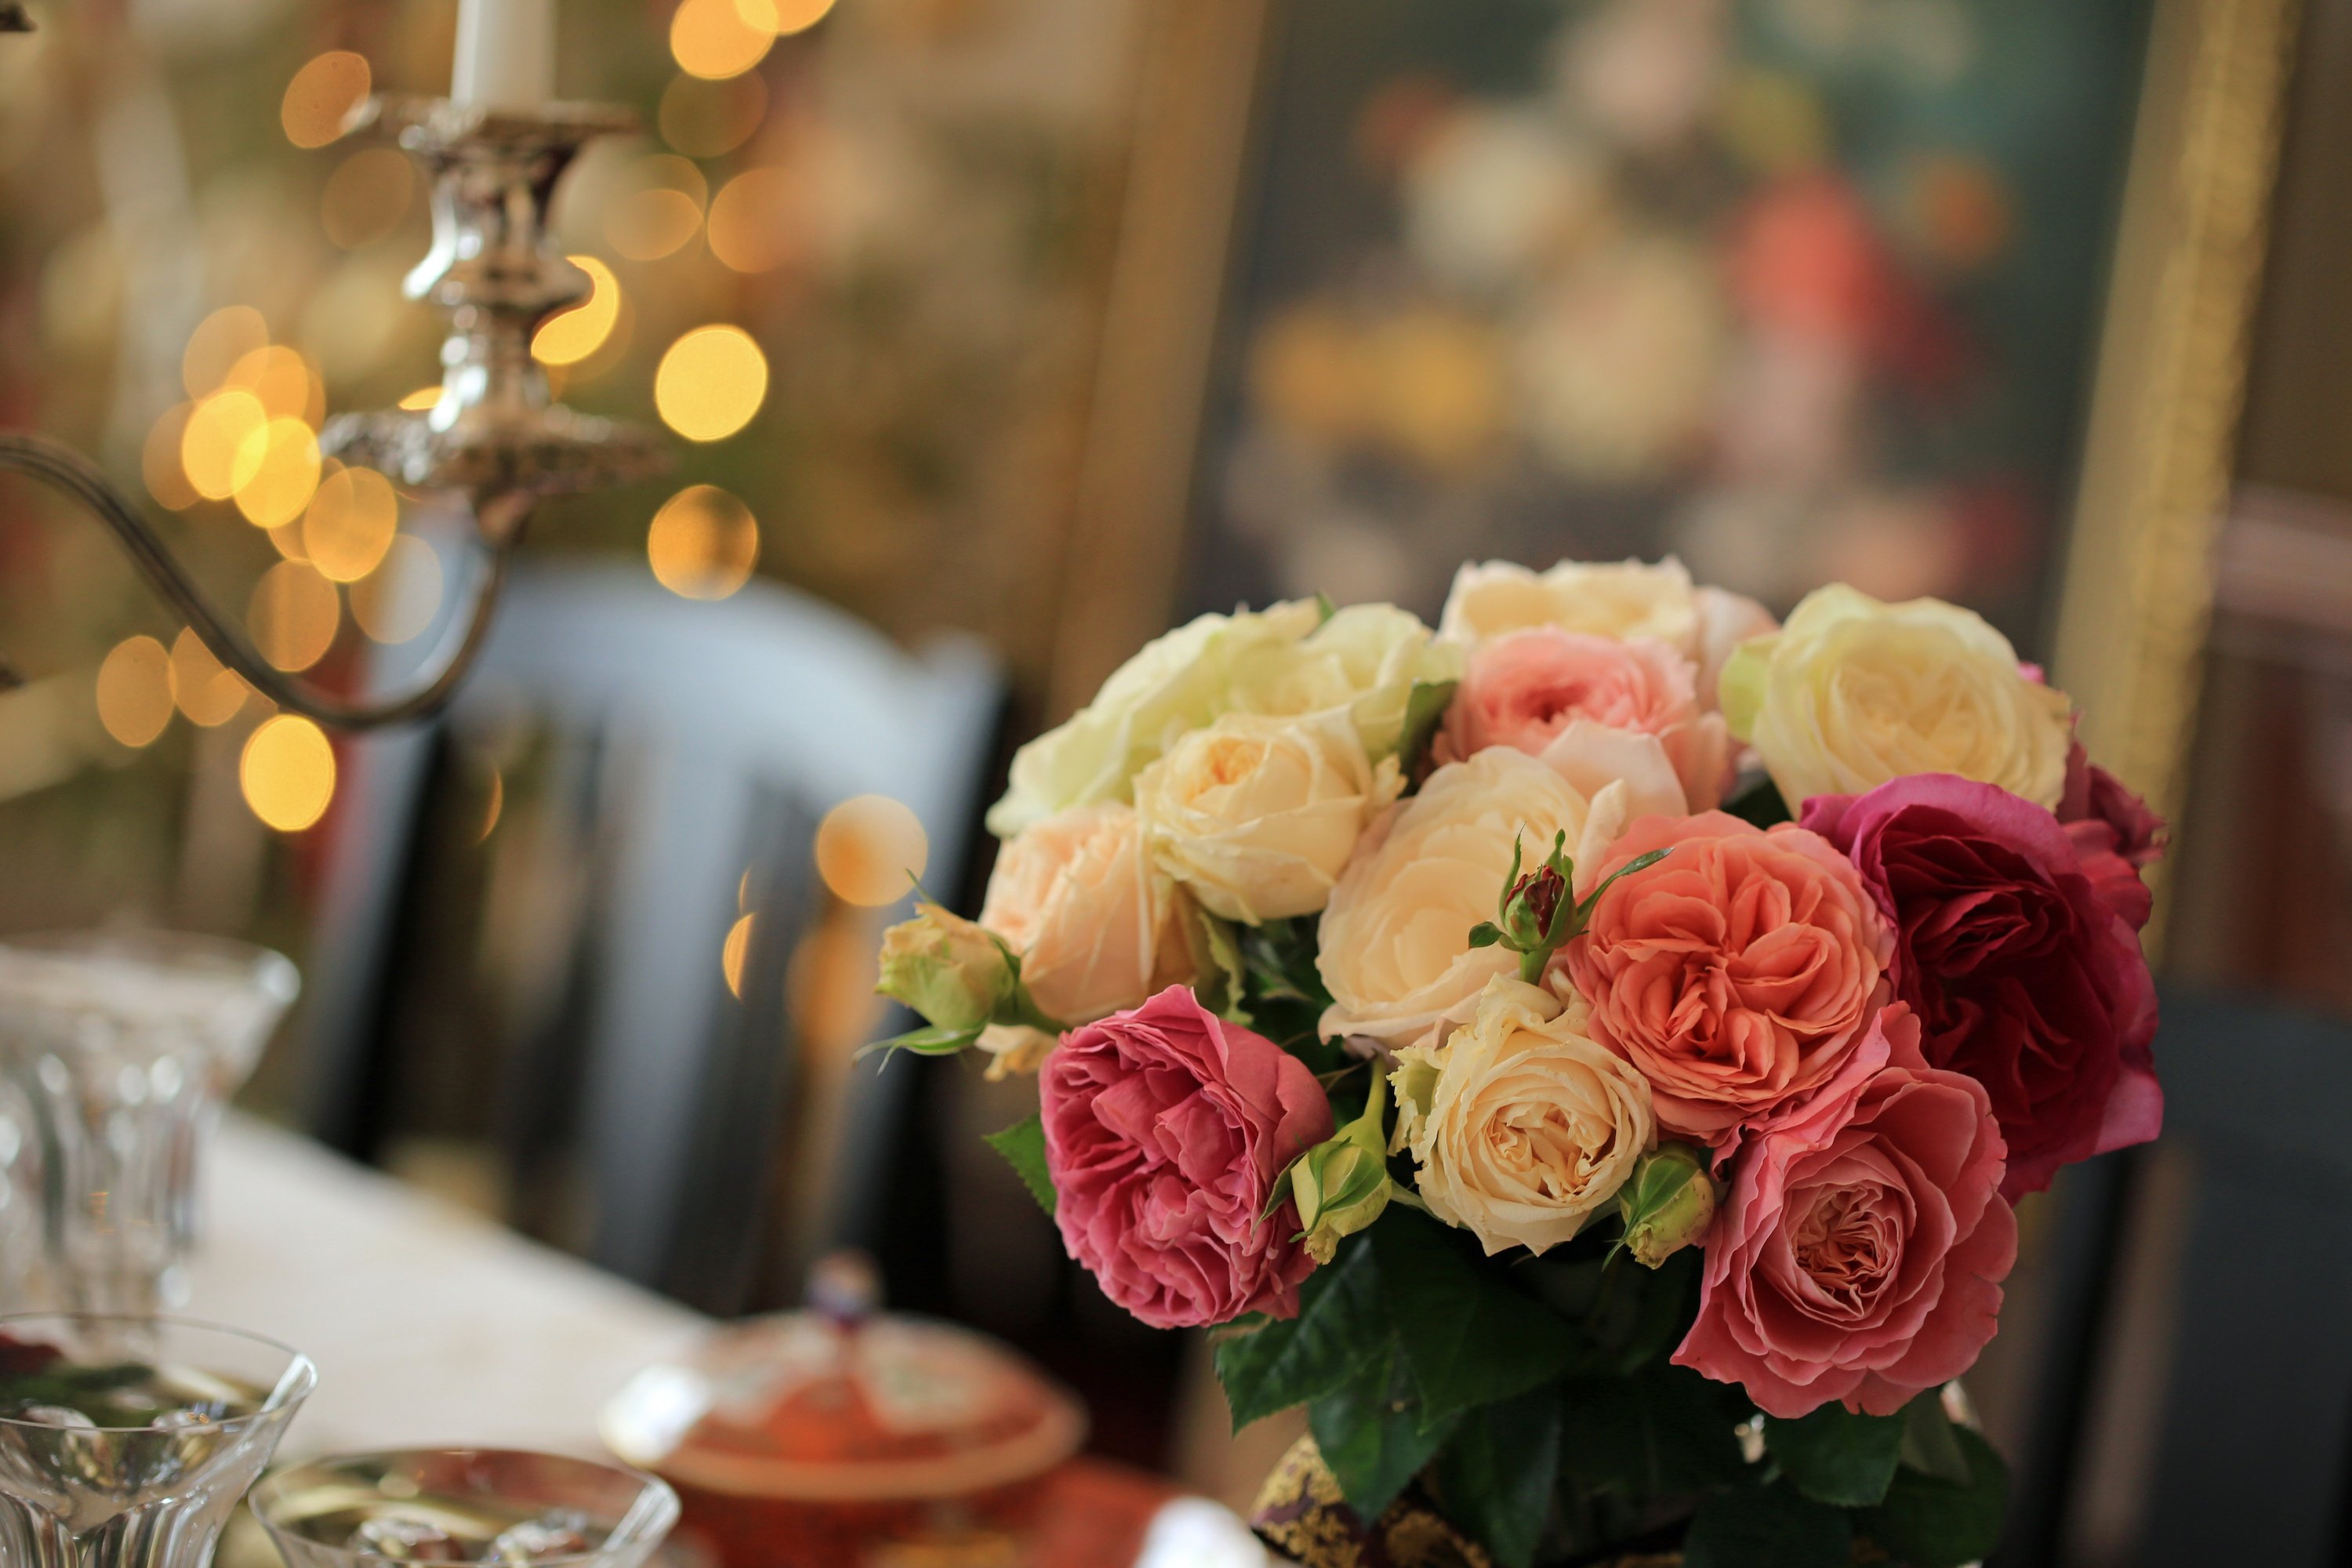 Много цветов на столе. Букет на столе. Красивый букет на столе. Цветы на столе букет. Букет роз на столе.